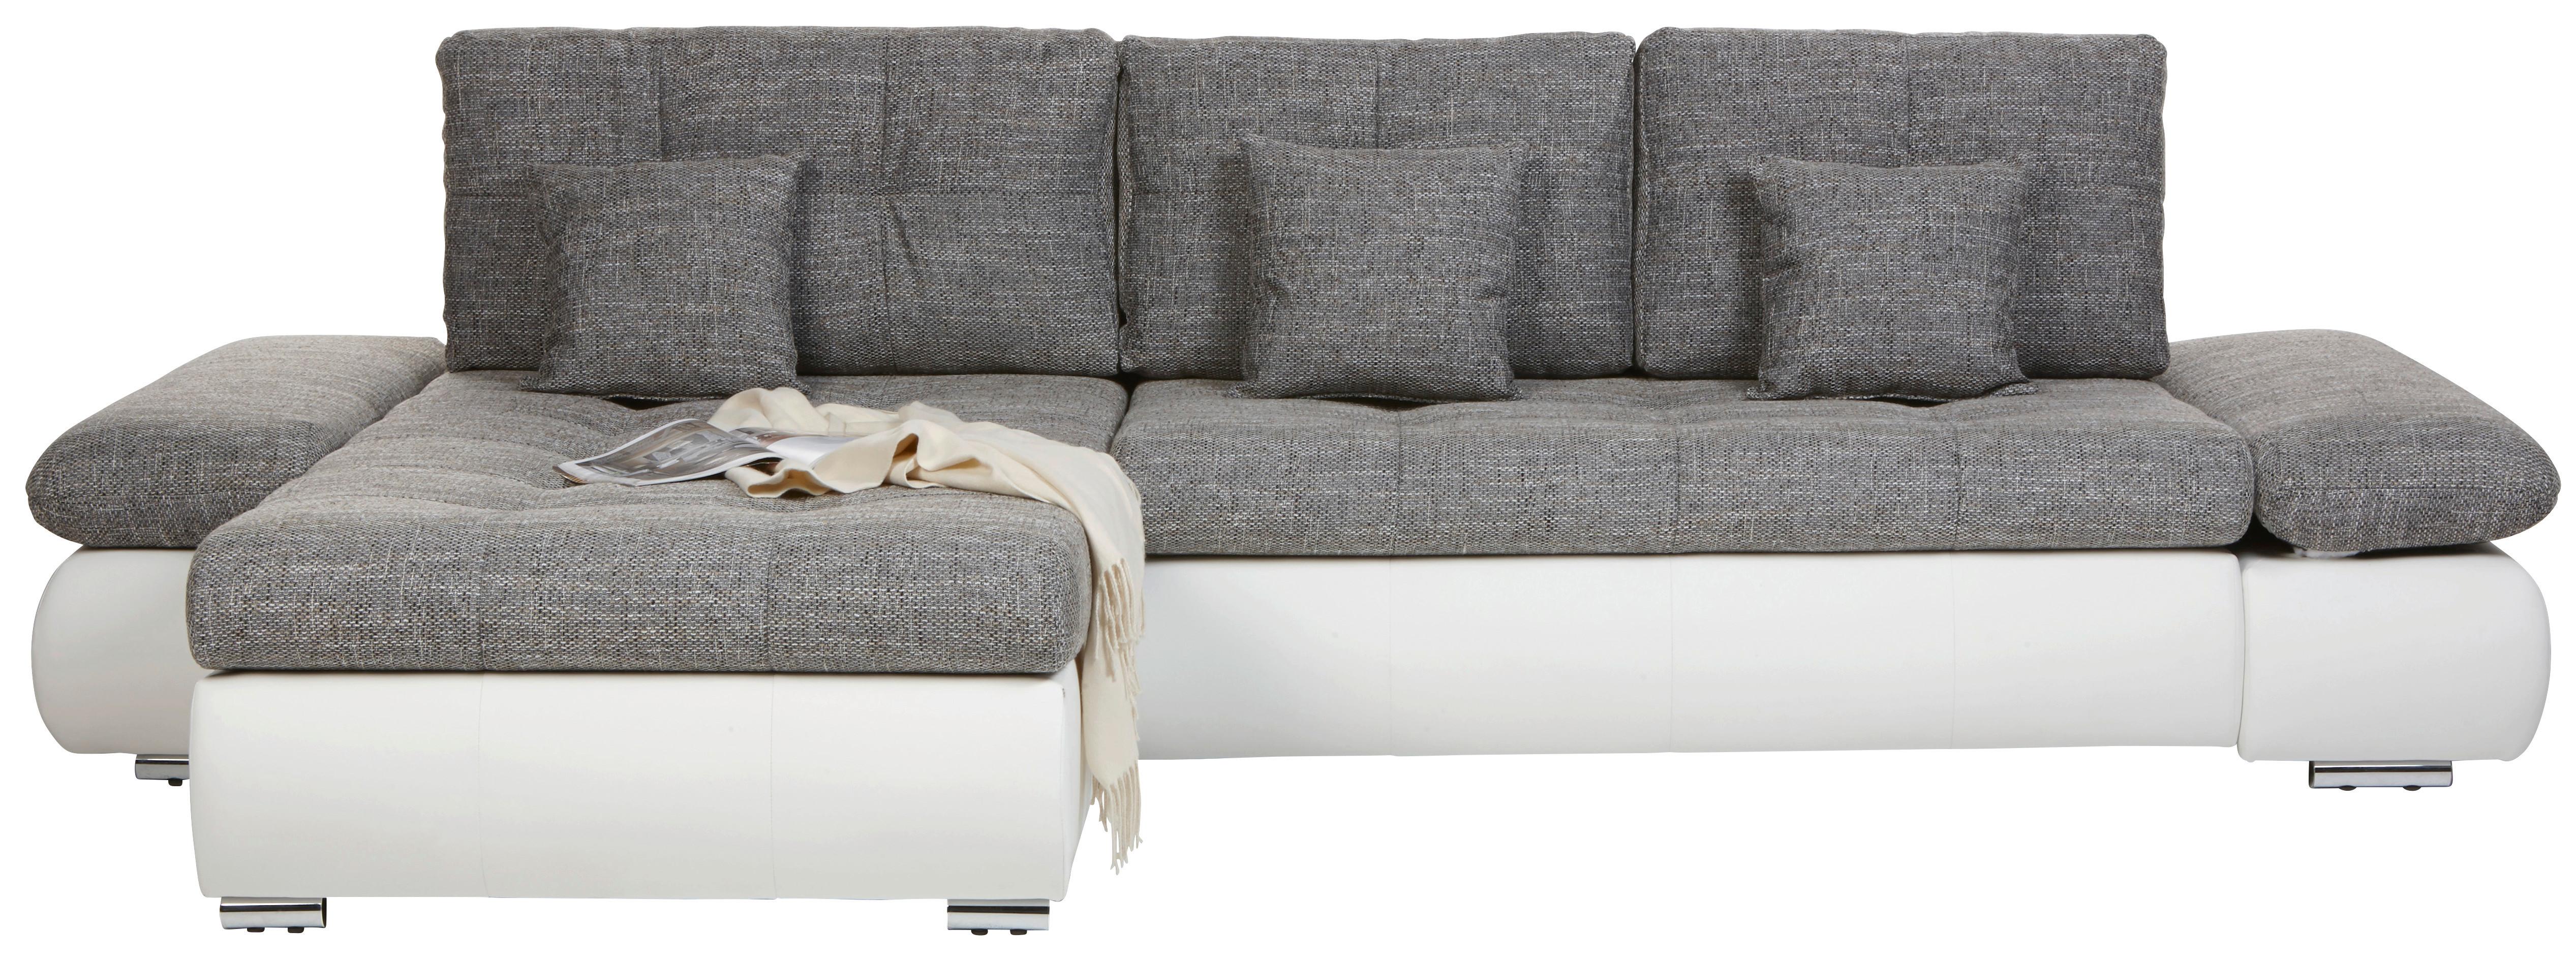 Sedežna Garnitura Enrico - barve kroma/siva, Moderno, kovina/umetna masa (303/88/185cm) - Top ponudba